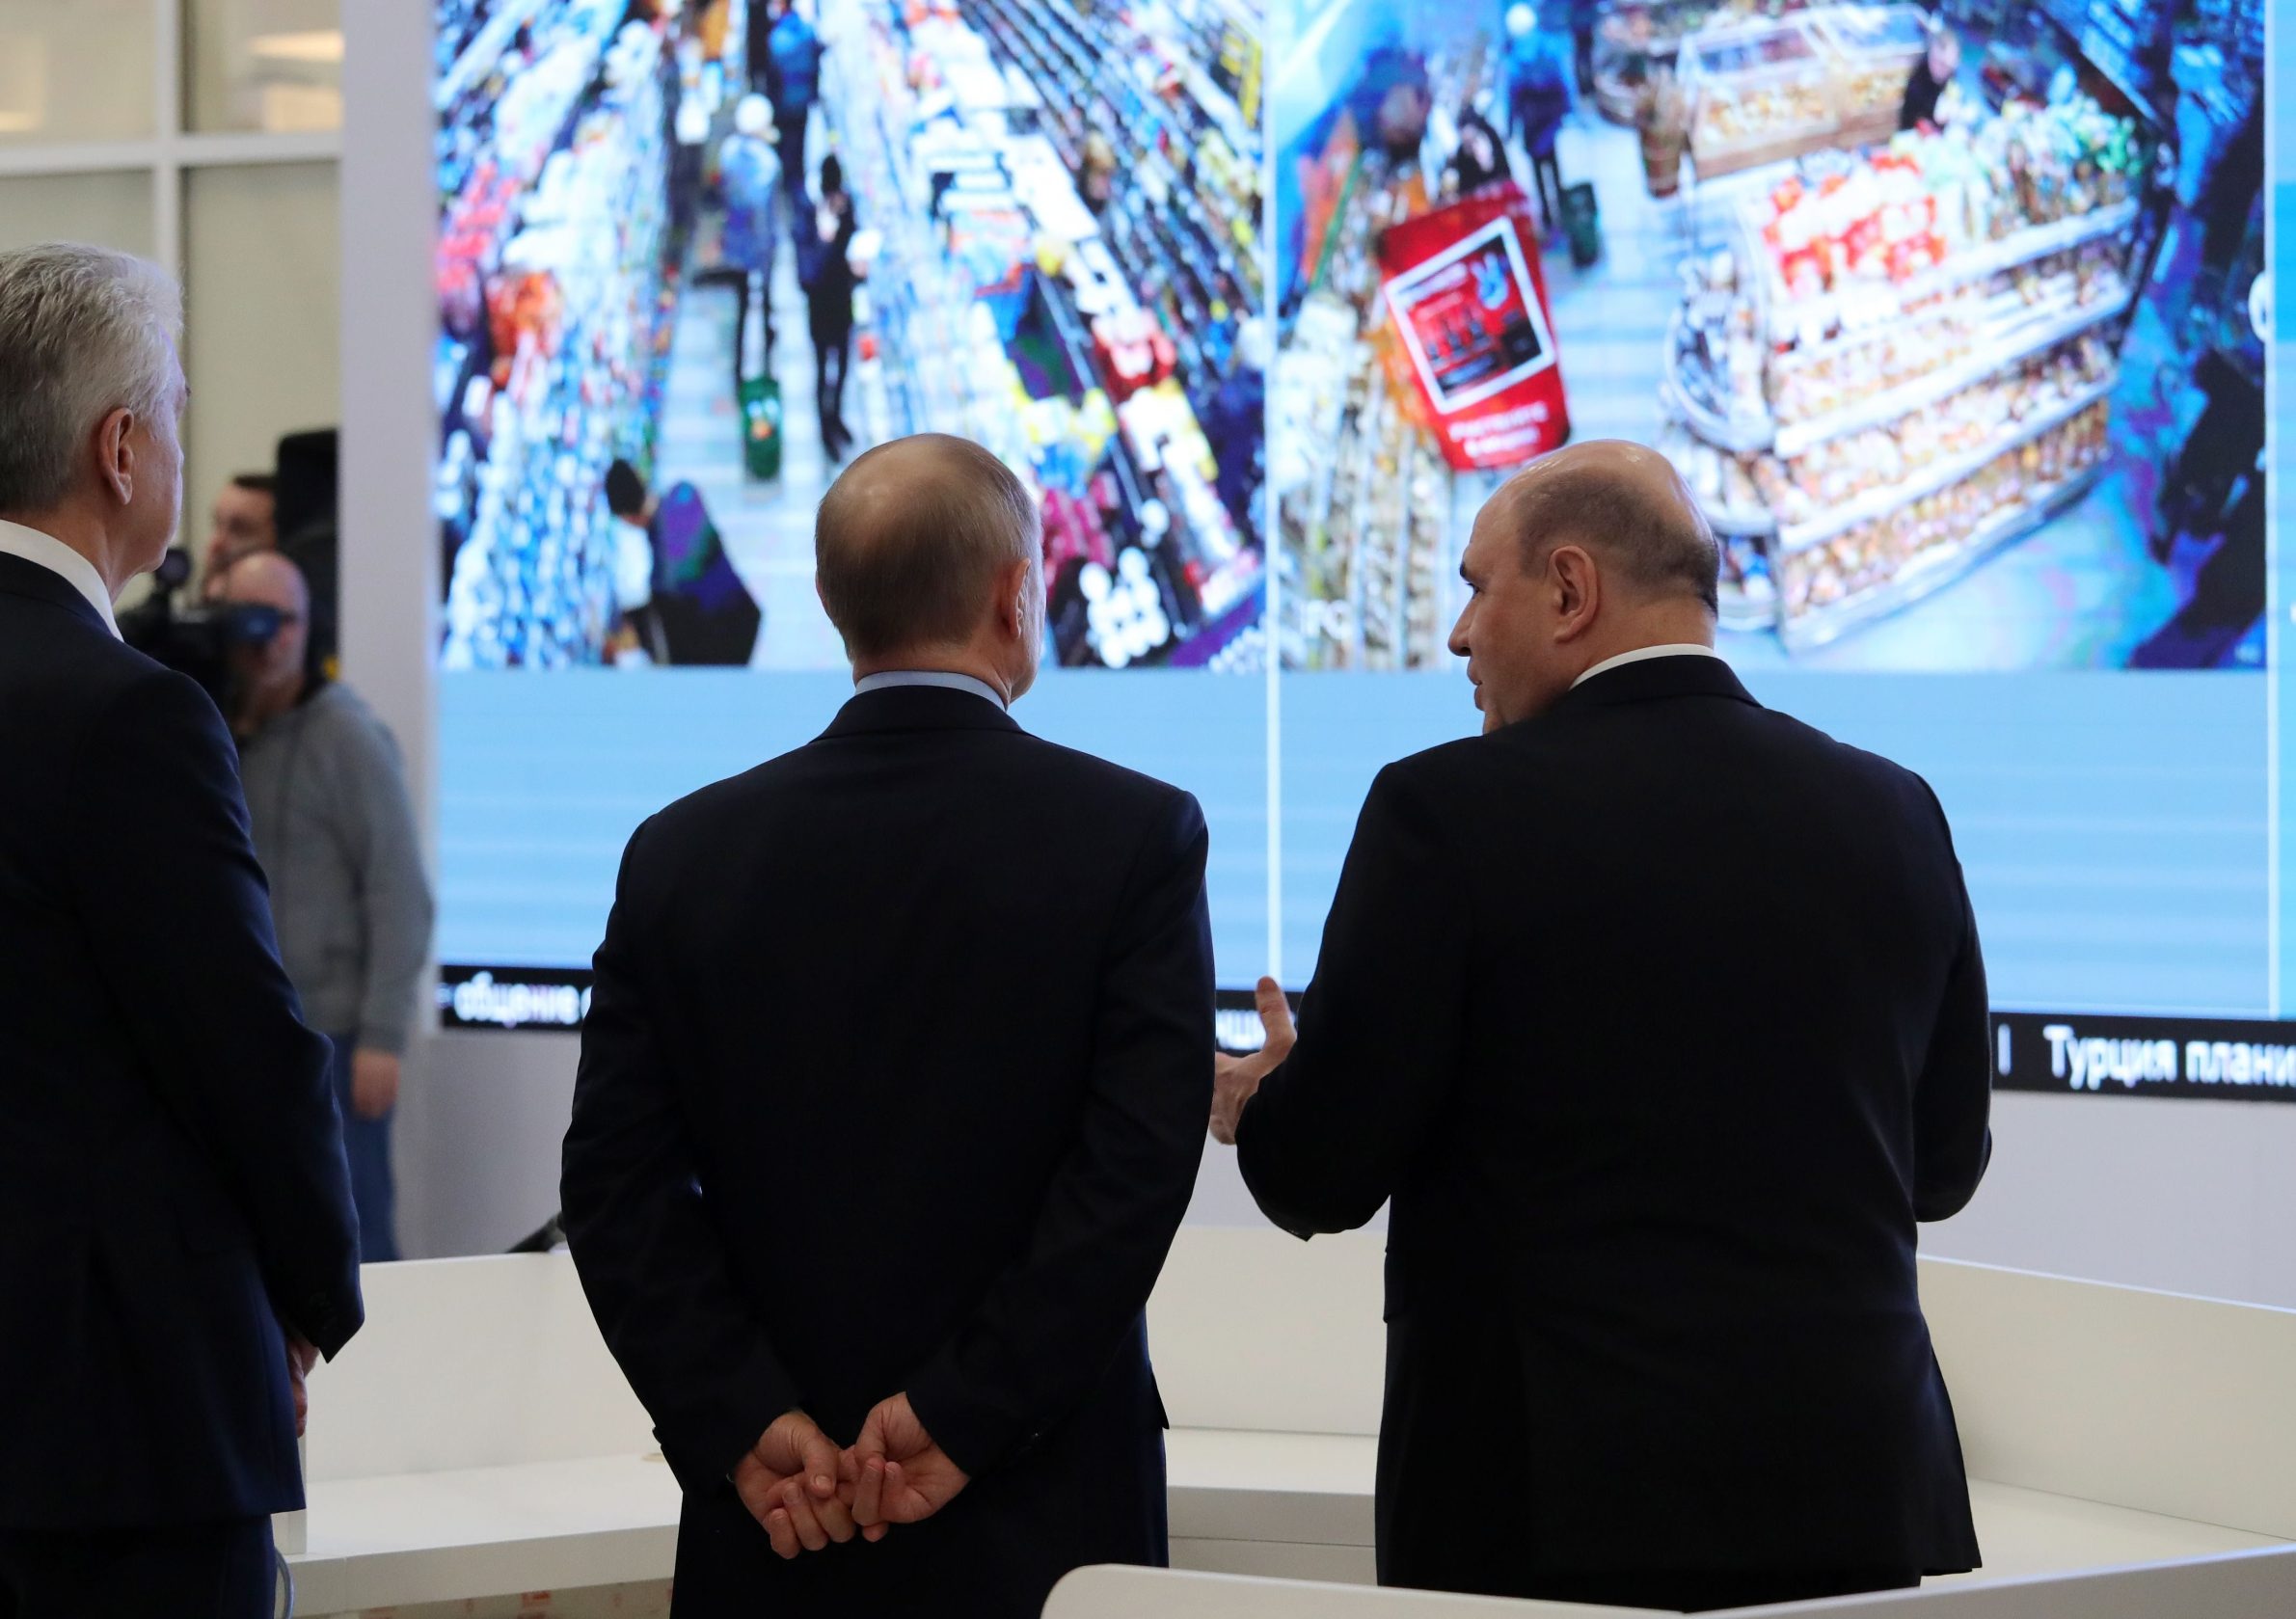 Ruski predsjednik Vladimir Putin i premije Mihail Mišustin gledaju kako radi sustav kamera